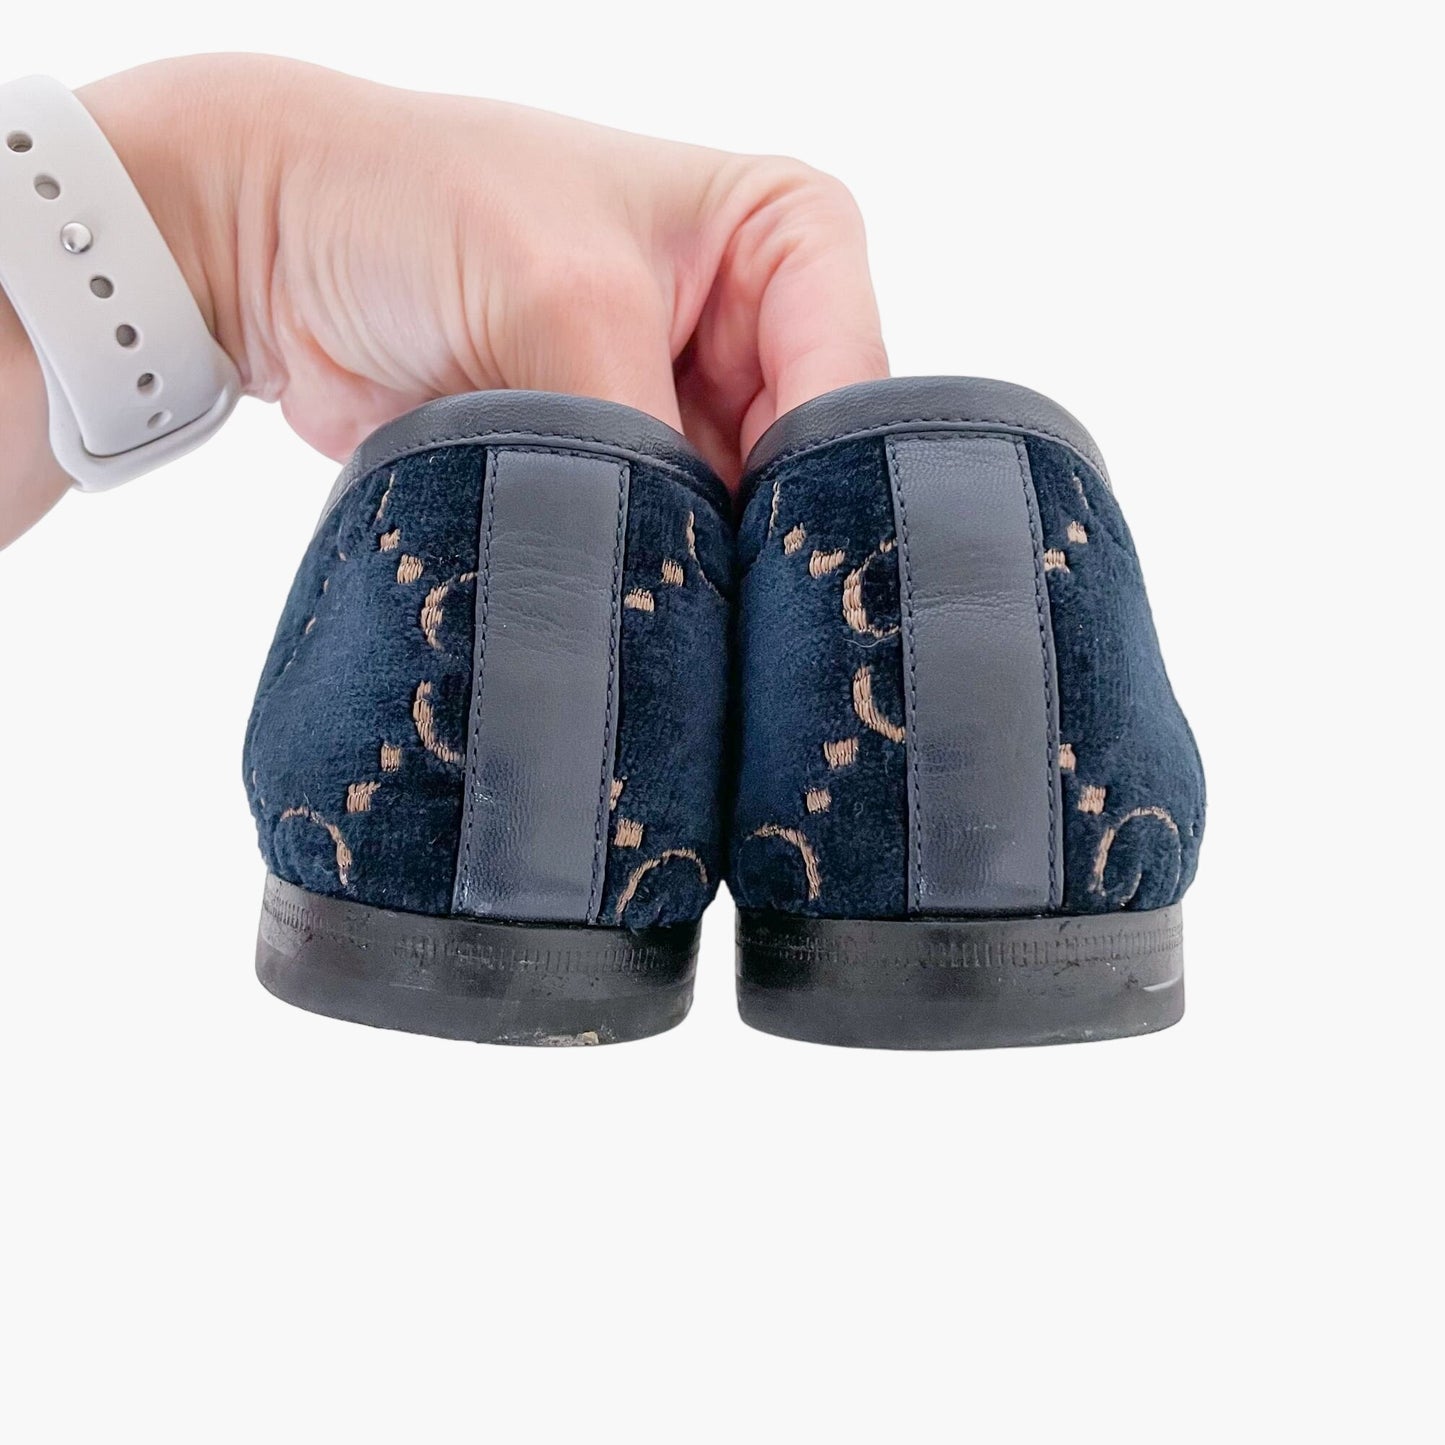 Gucci Jordaan Horsebit Loafer in Navy Blue GG Velvet Size 37.5